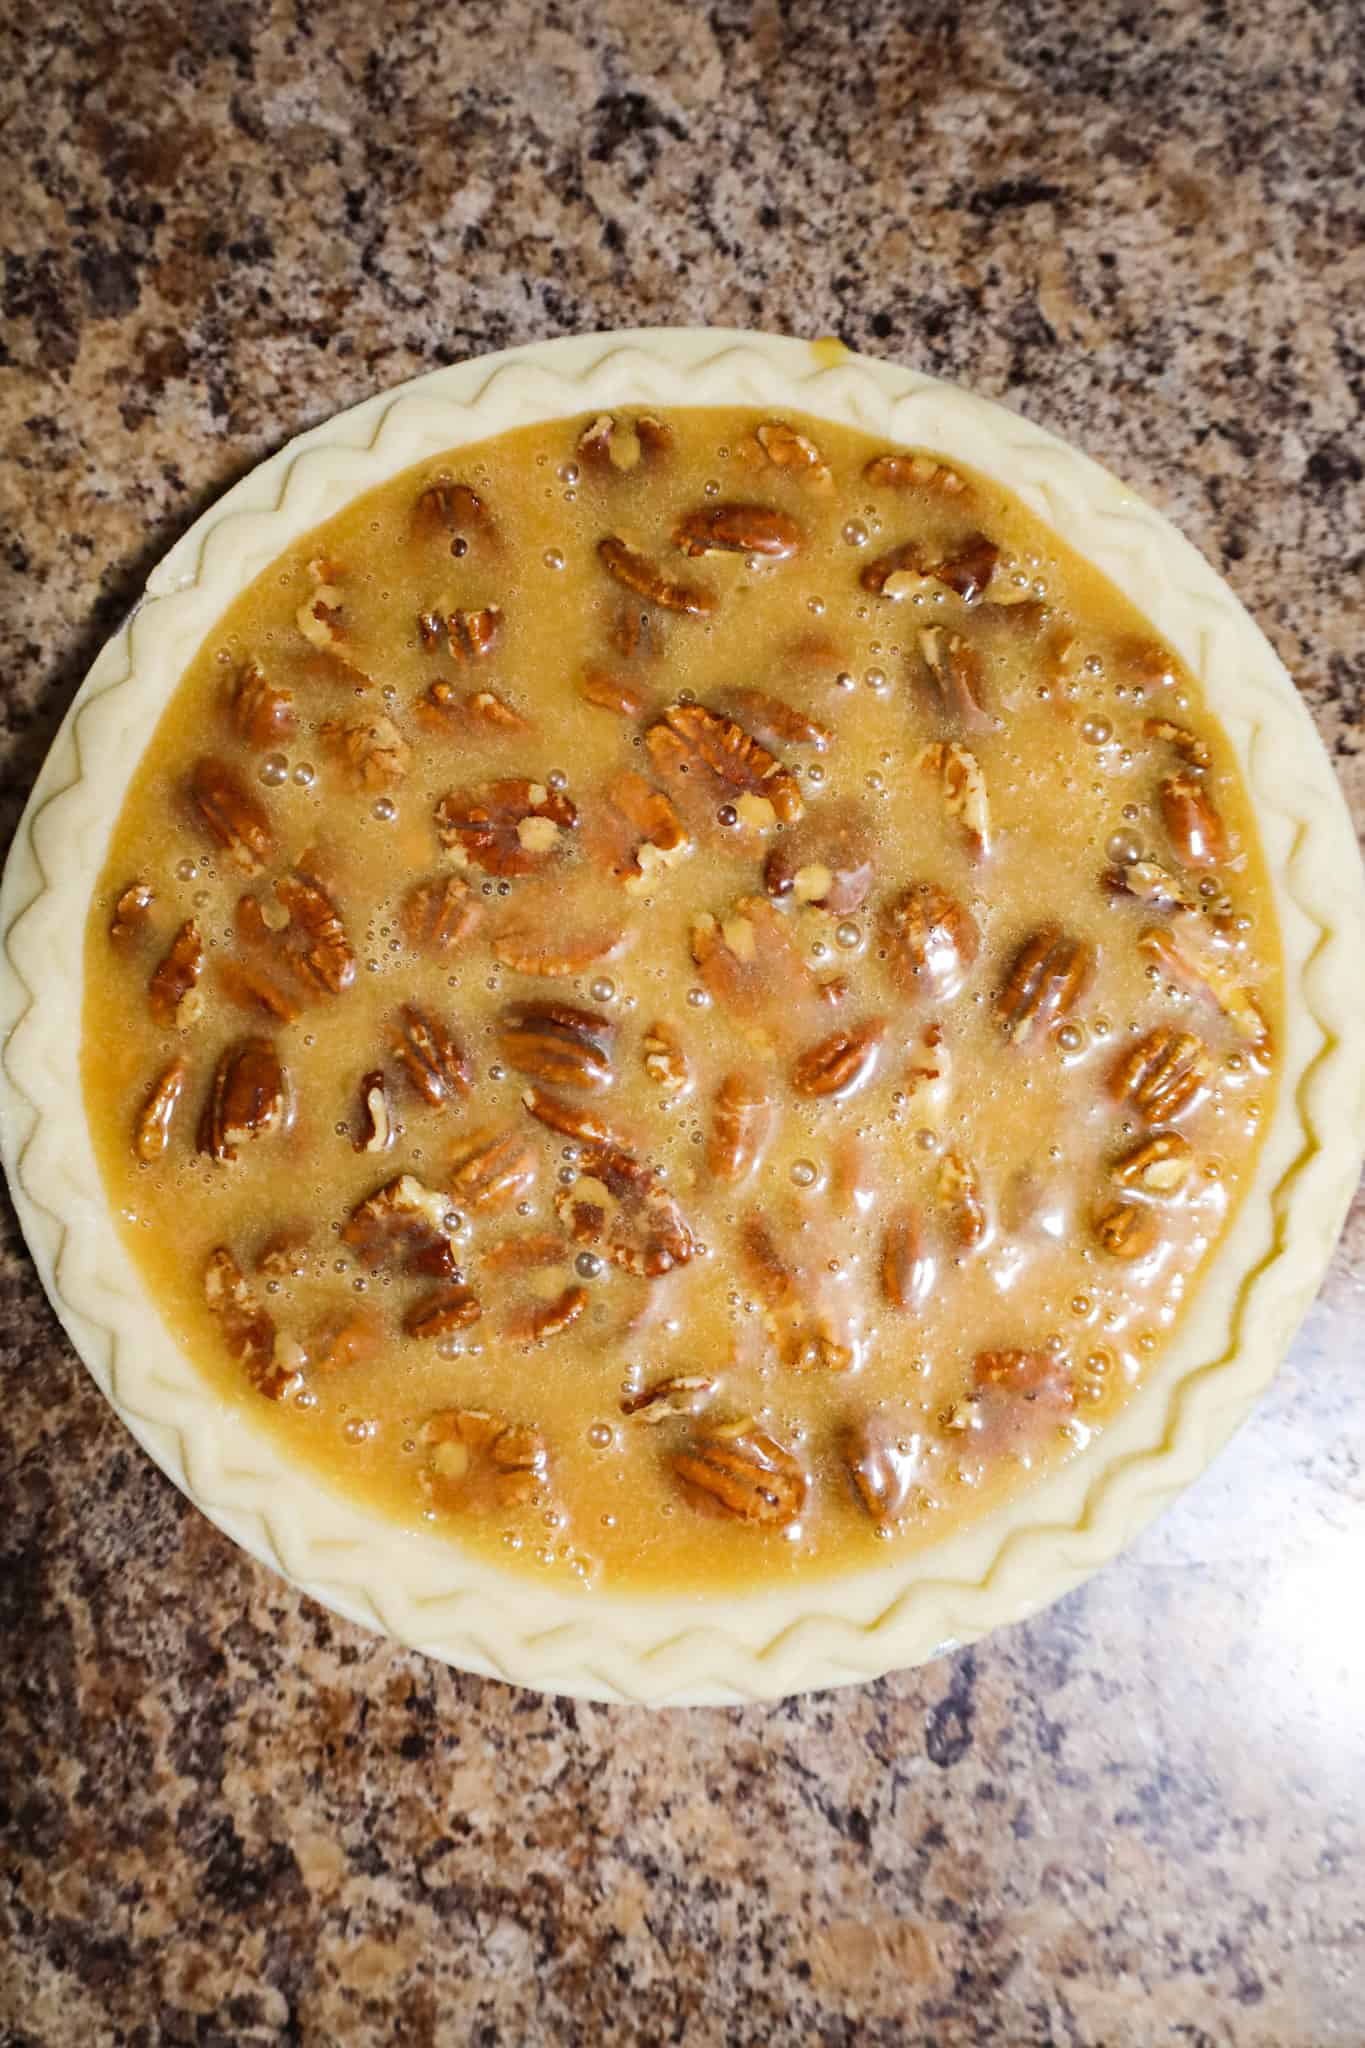 caramel pecan pie before baking